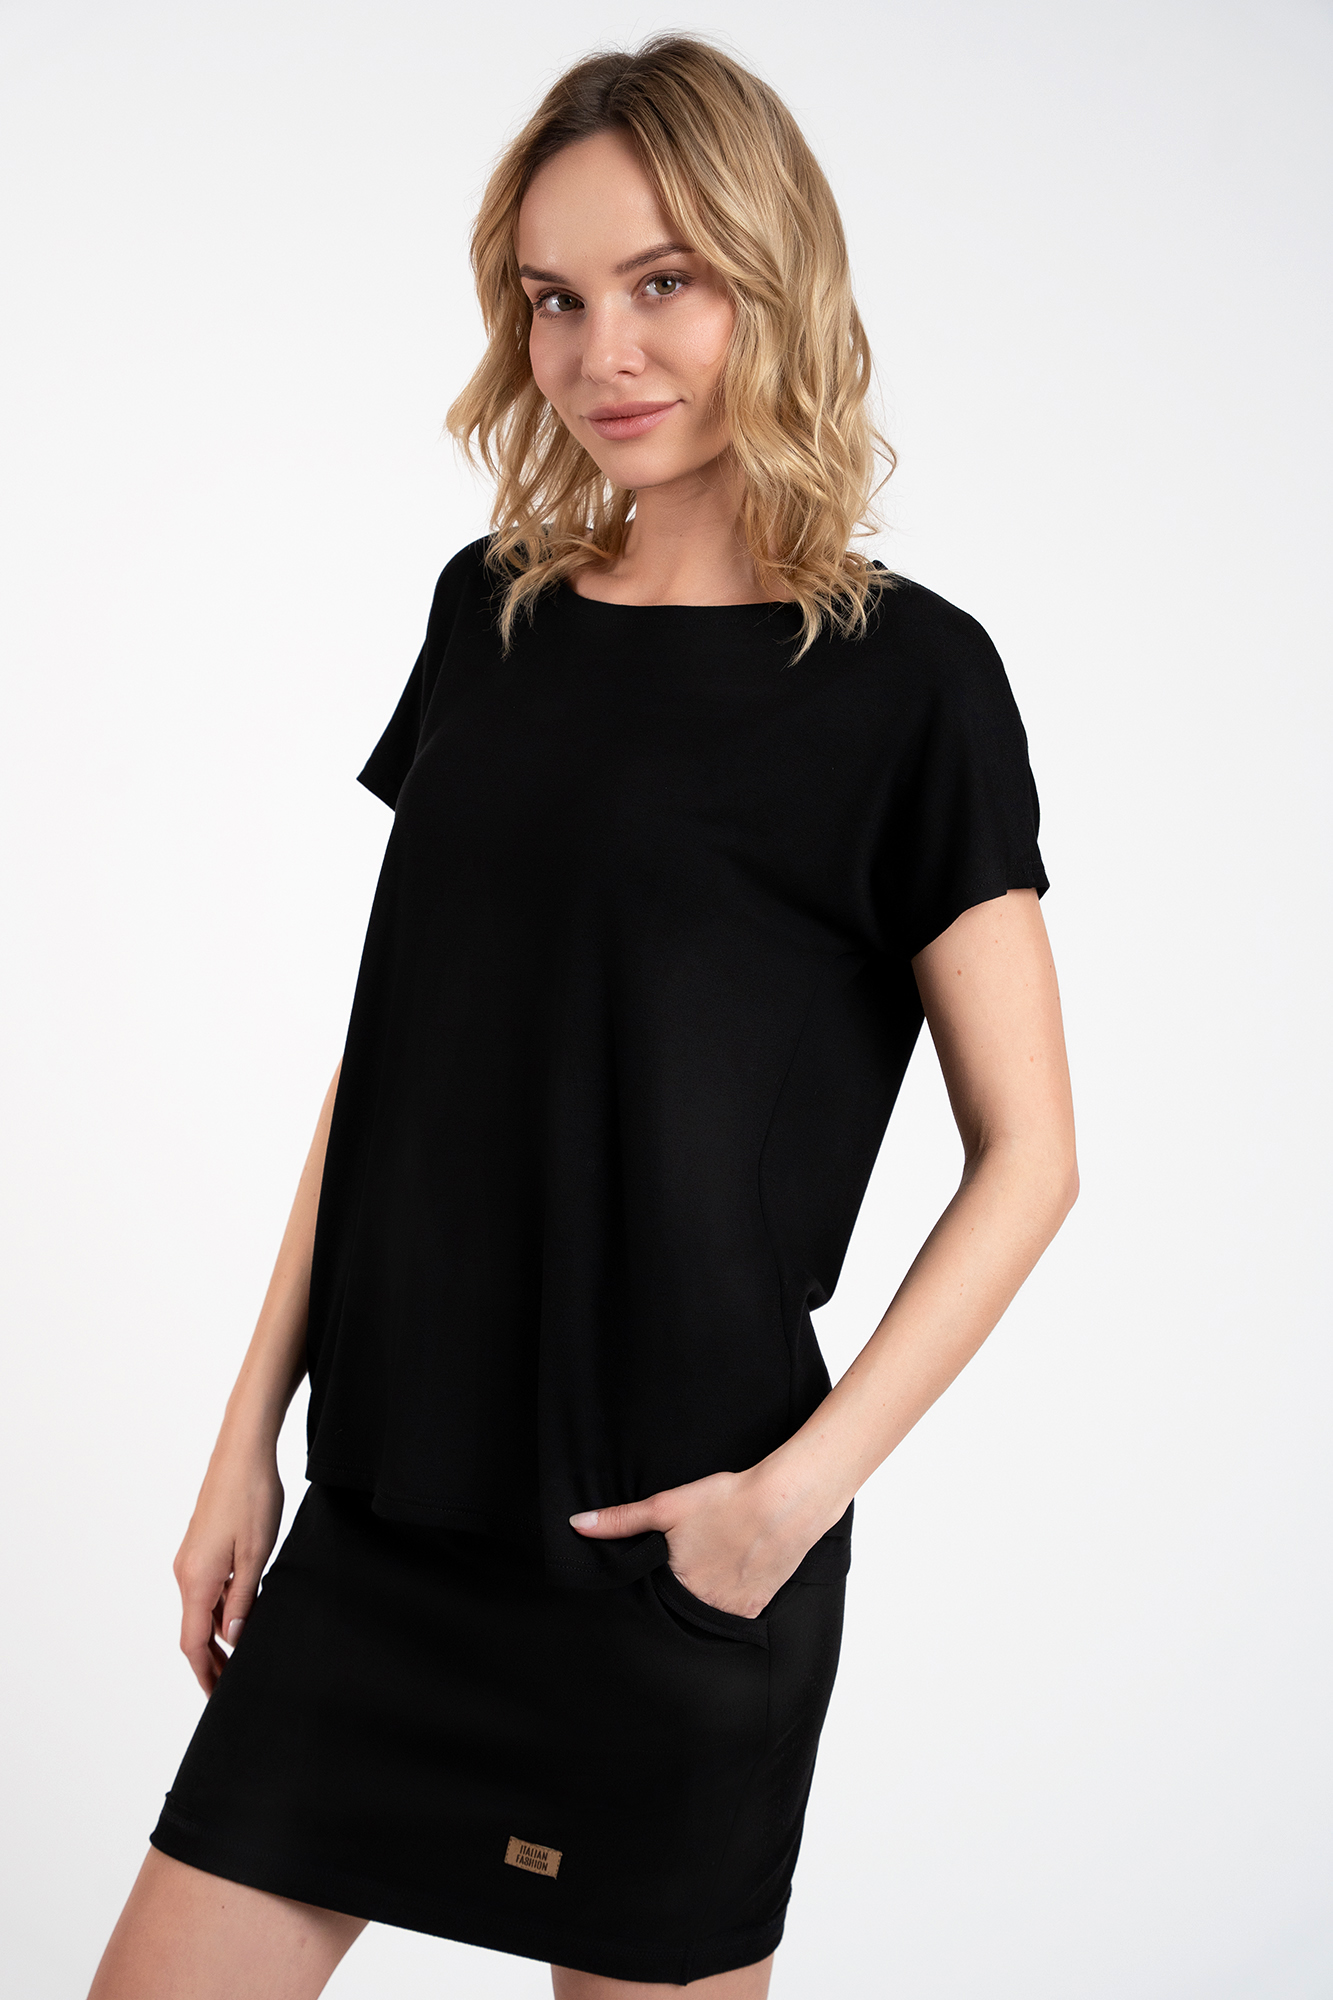 Women's blouse Ksenia with short sleeves - black